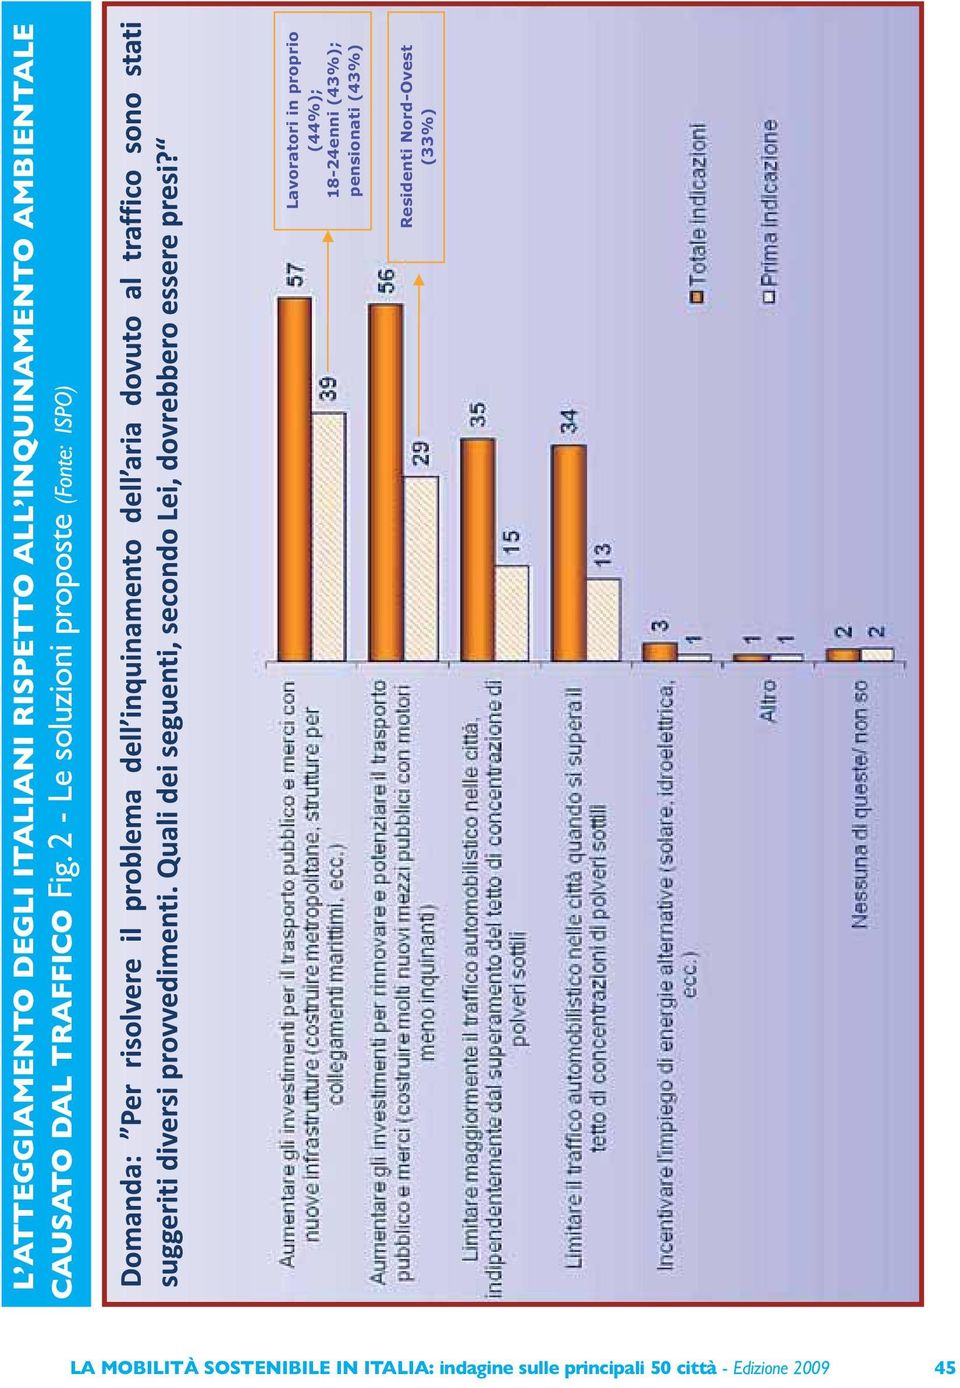 2 - Le soluzioni proposte (Fonte: ISPO) Lavoratori in proprio (44%);